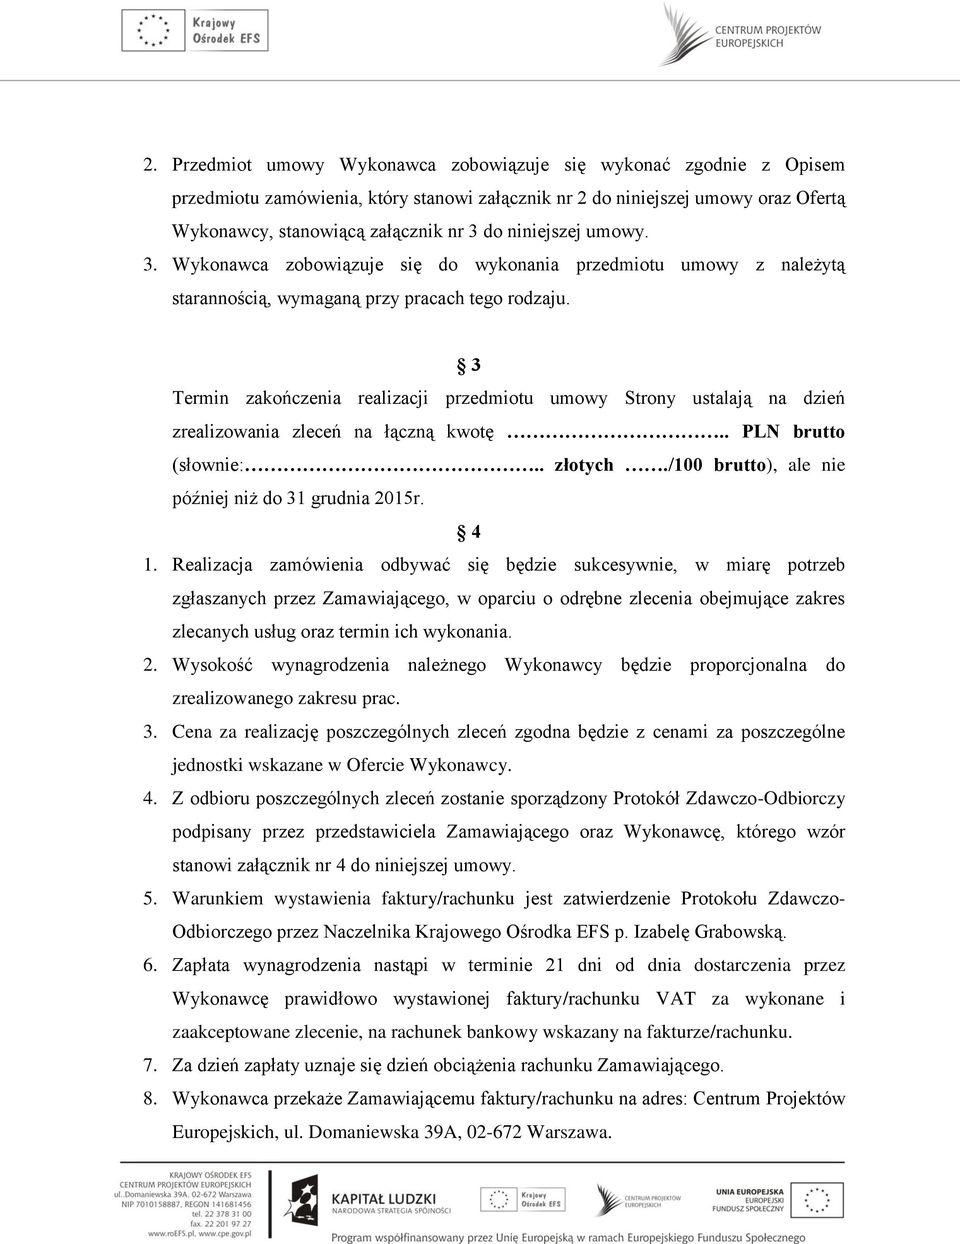 3 Termin zakończenia realizacji przedmiotu umowy Strony ustalają na dzień zrealizowania zleceń na łączną kwotę.. PLN brutto (słownie:.. złotych./100 brutto), ale nie później niż do 31 grudnia 2015r.